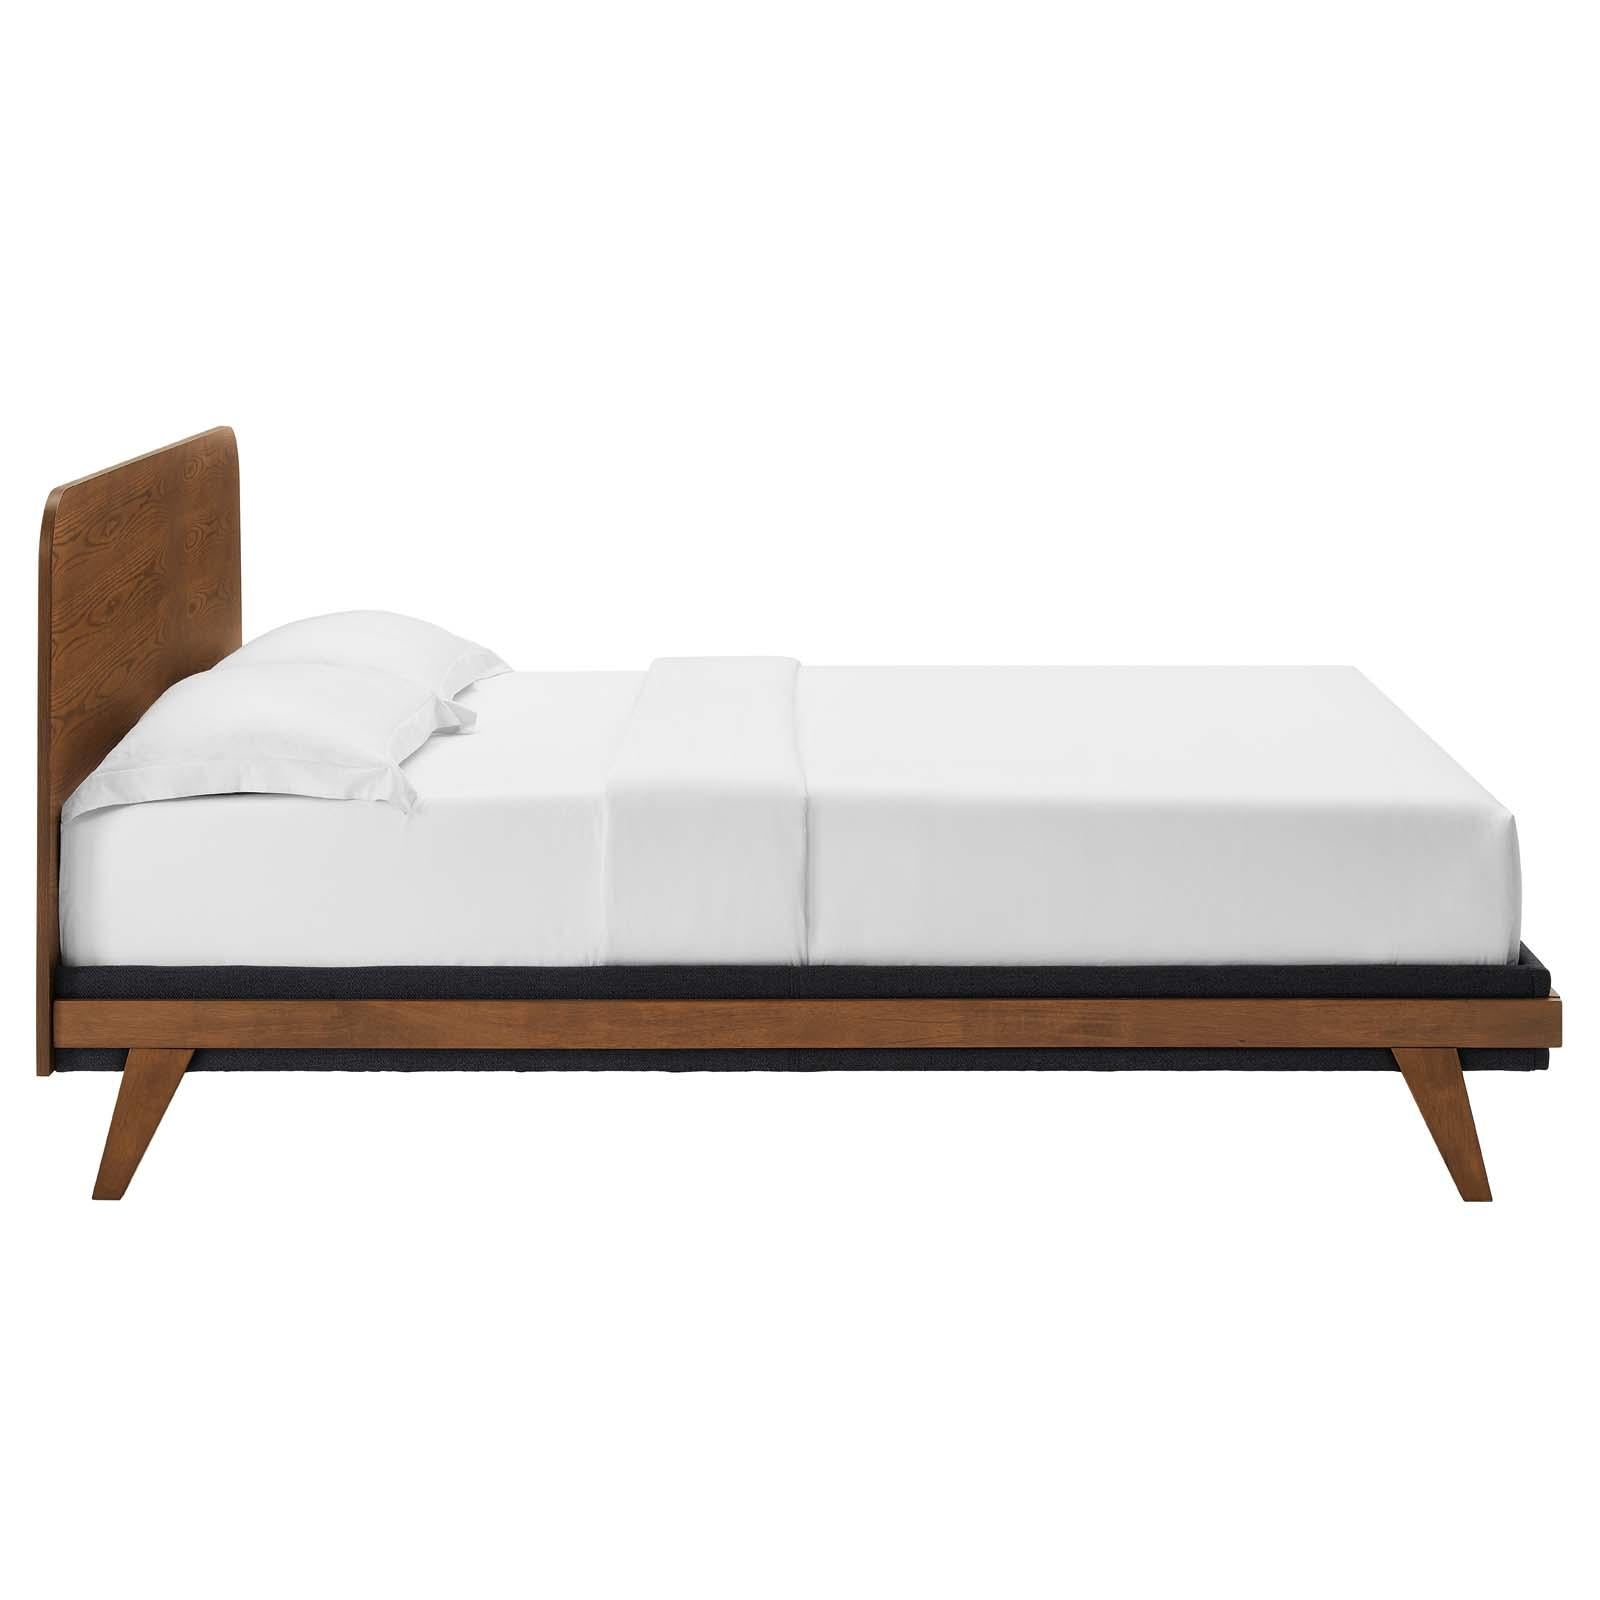 Modway Furniture Modern Dylan 3 Piece Bedroom Set - MOD-6952